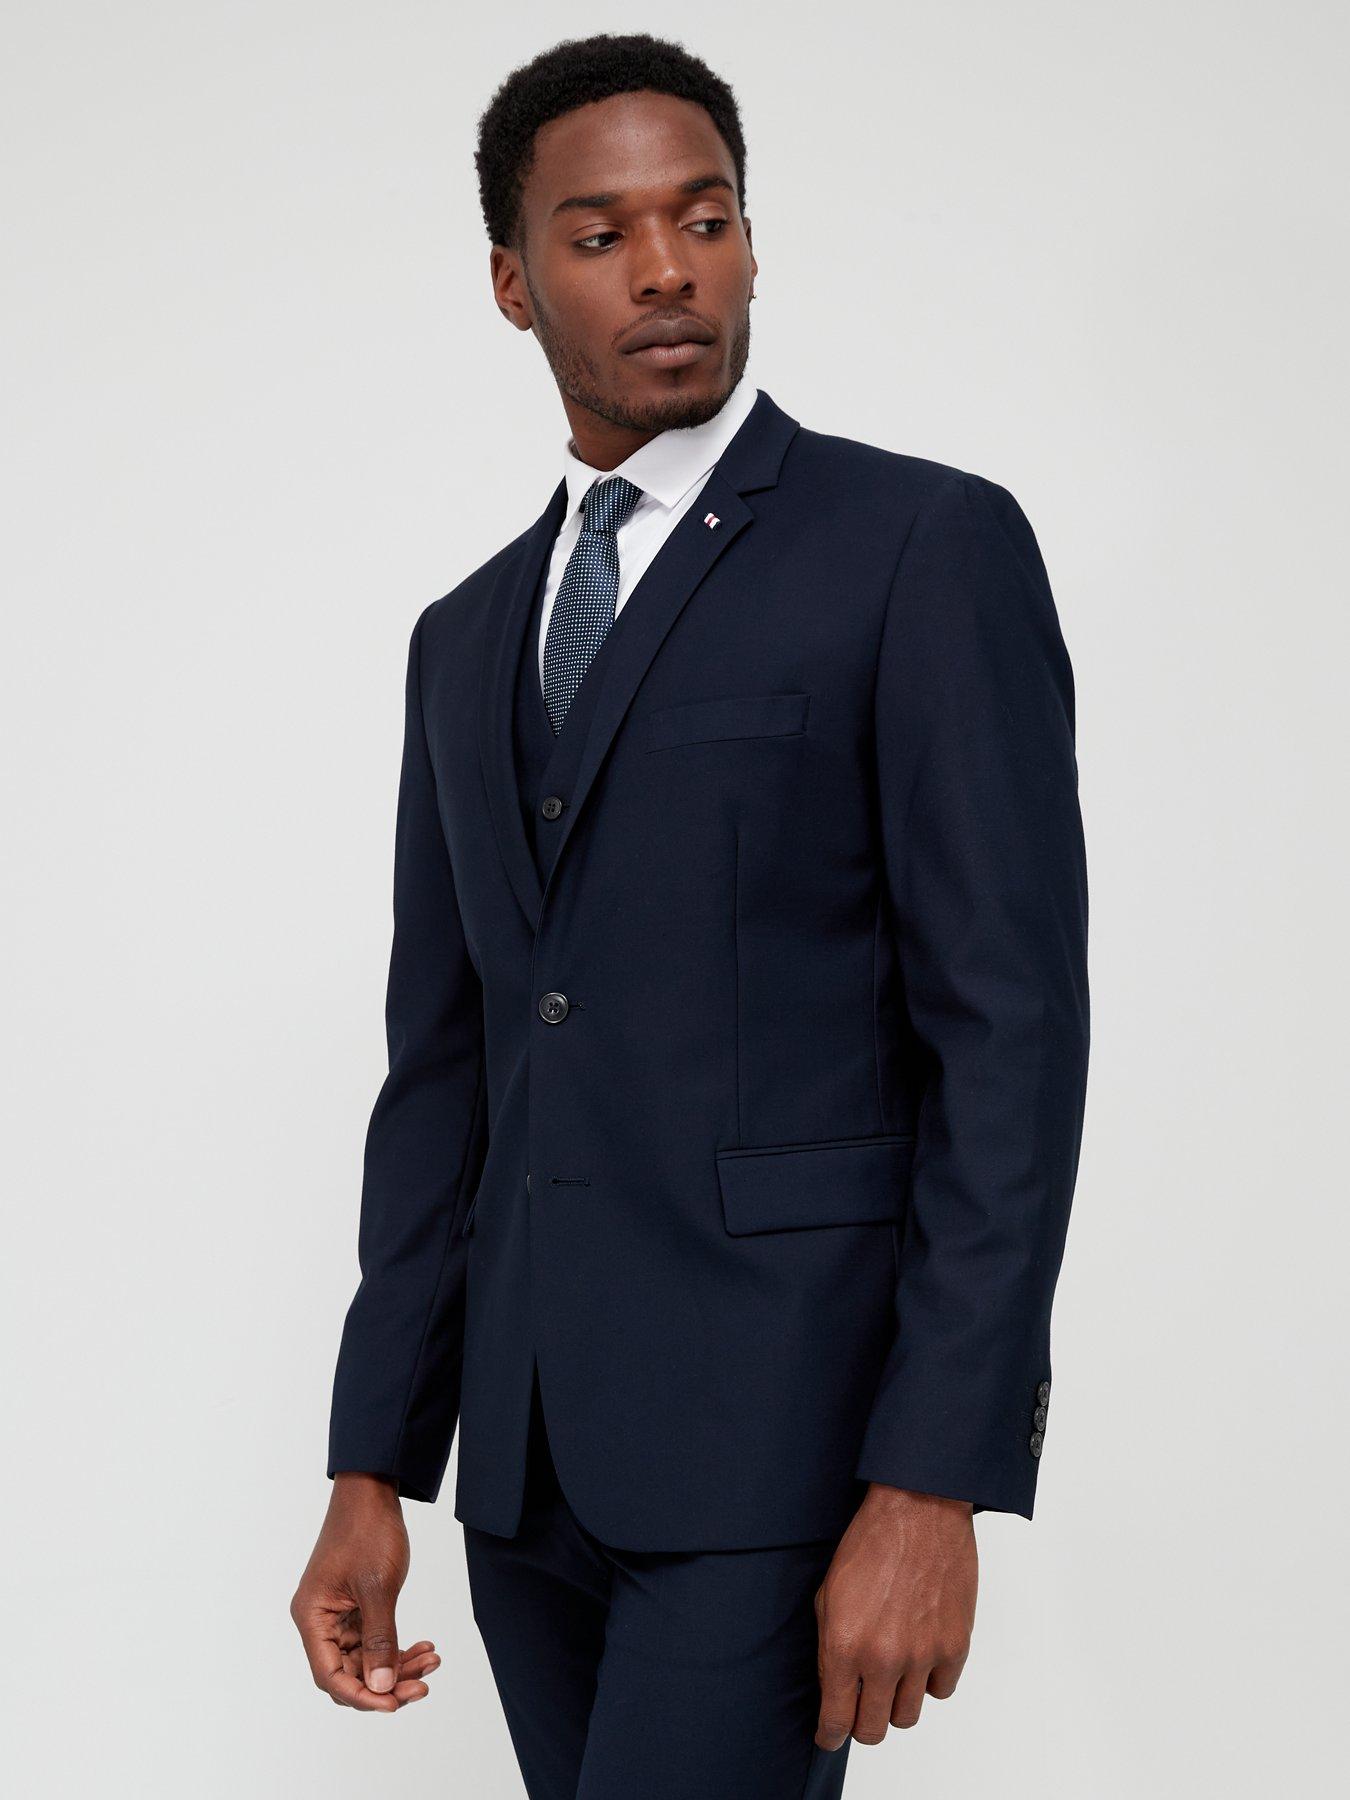 discount 97% NoName Suit jacket Navy Blue MEN FASHION Suits & Sets Elegant 